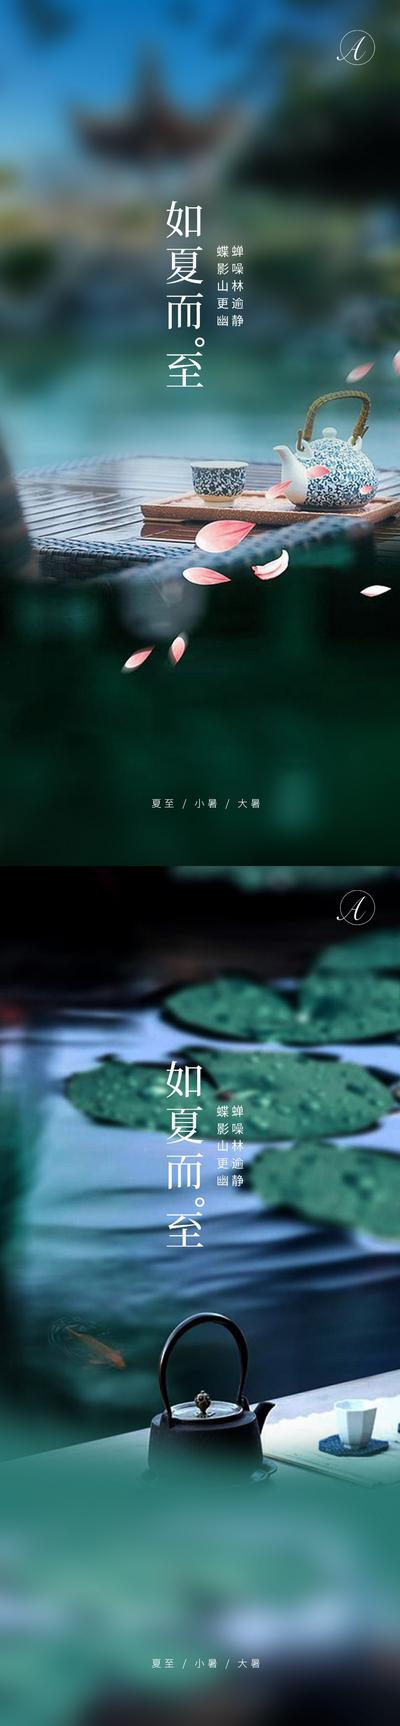 【南门网】海报 二十四节气  夏至 小暑 大暑 夏天 庭院 茶 悠闲 系列